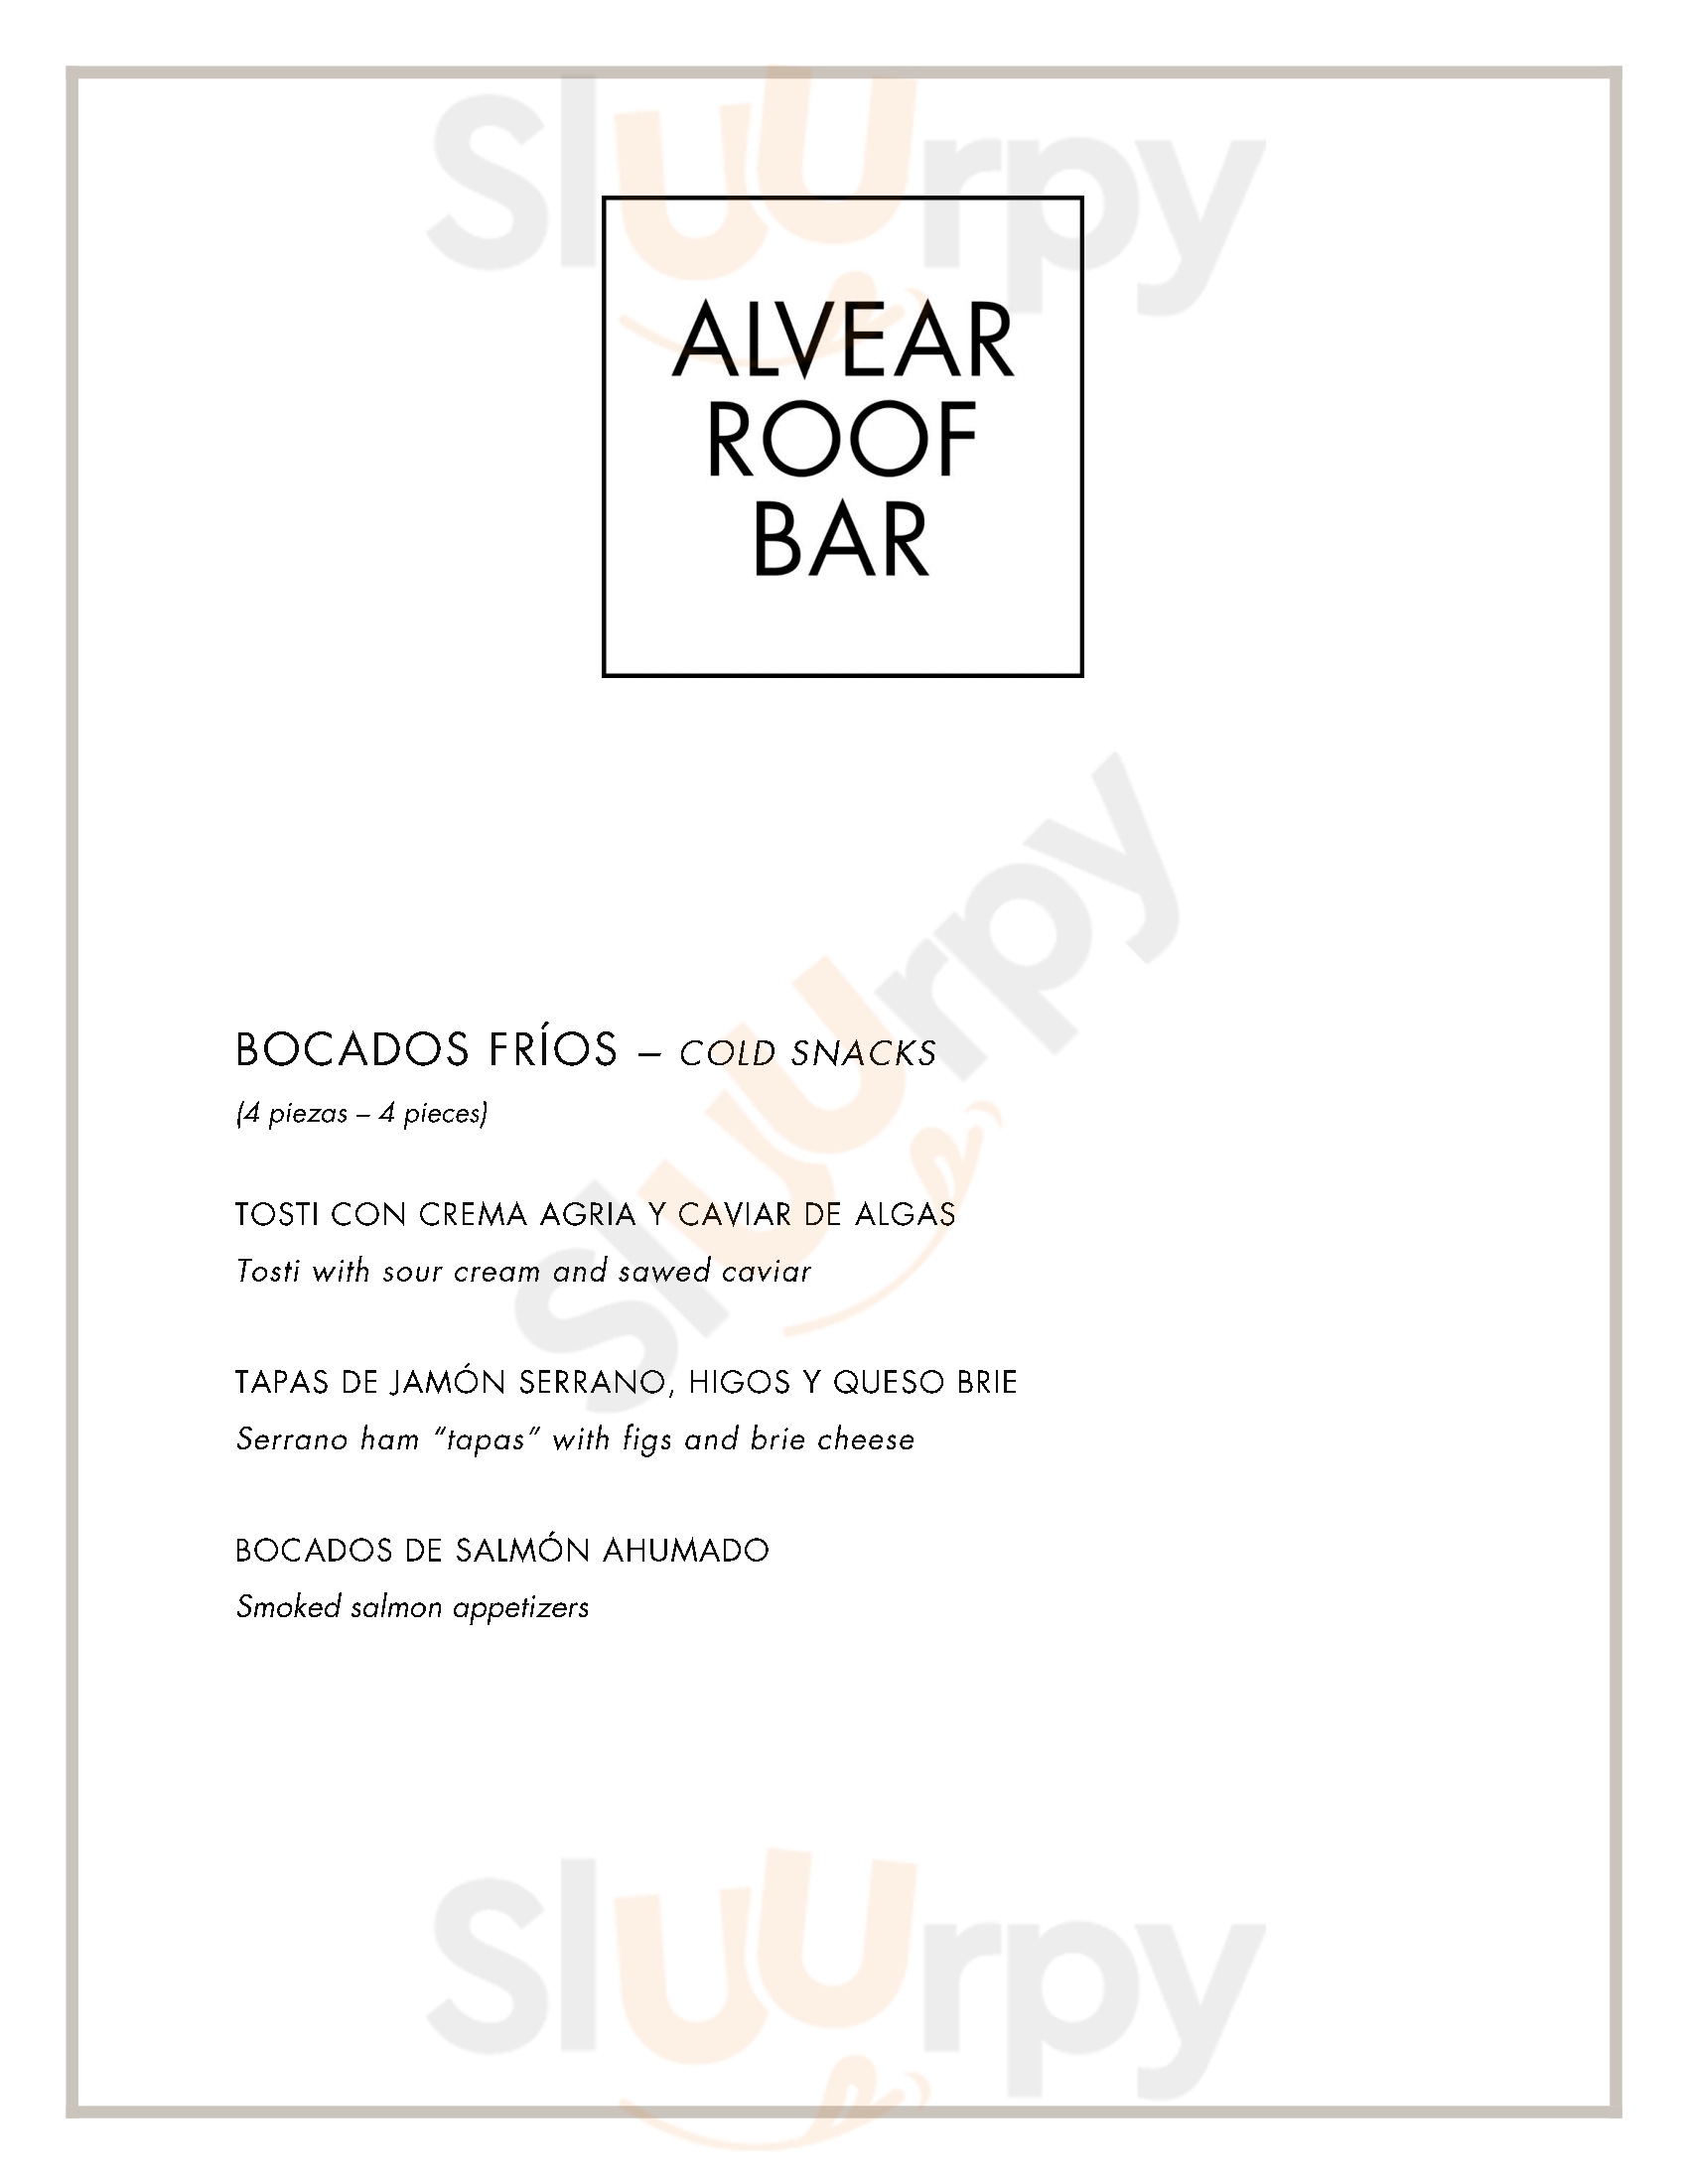 Alvear Roof Bar Buenos Aires Menu - 1